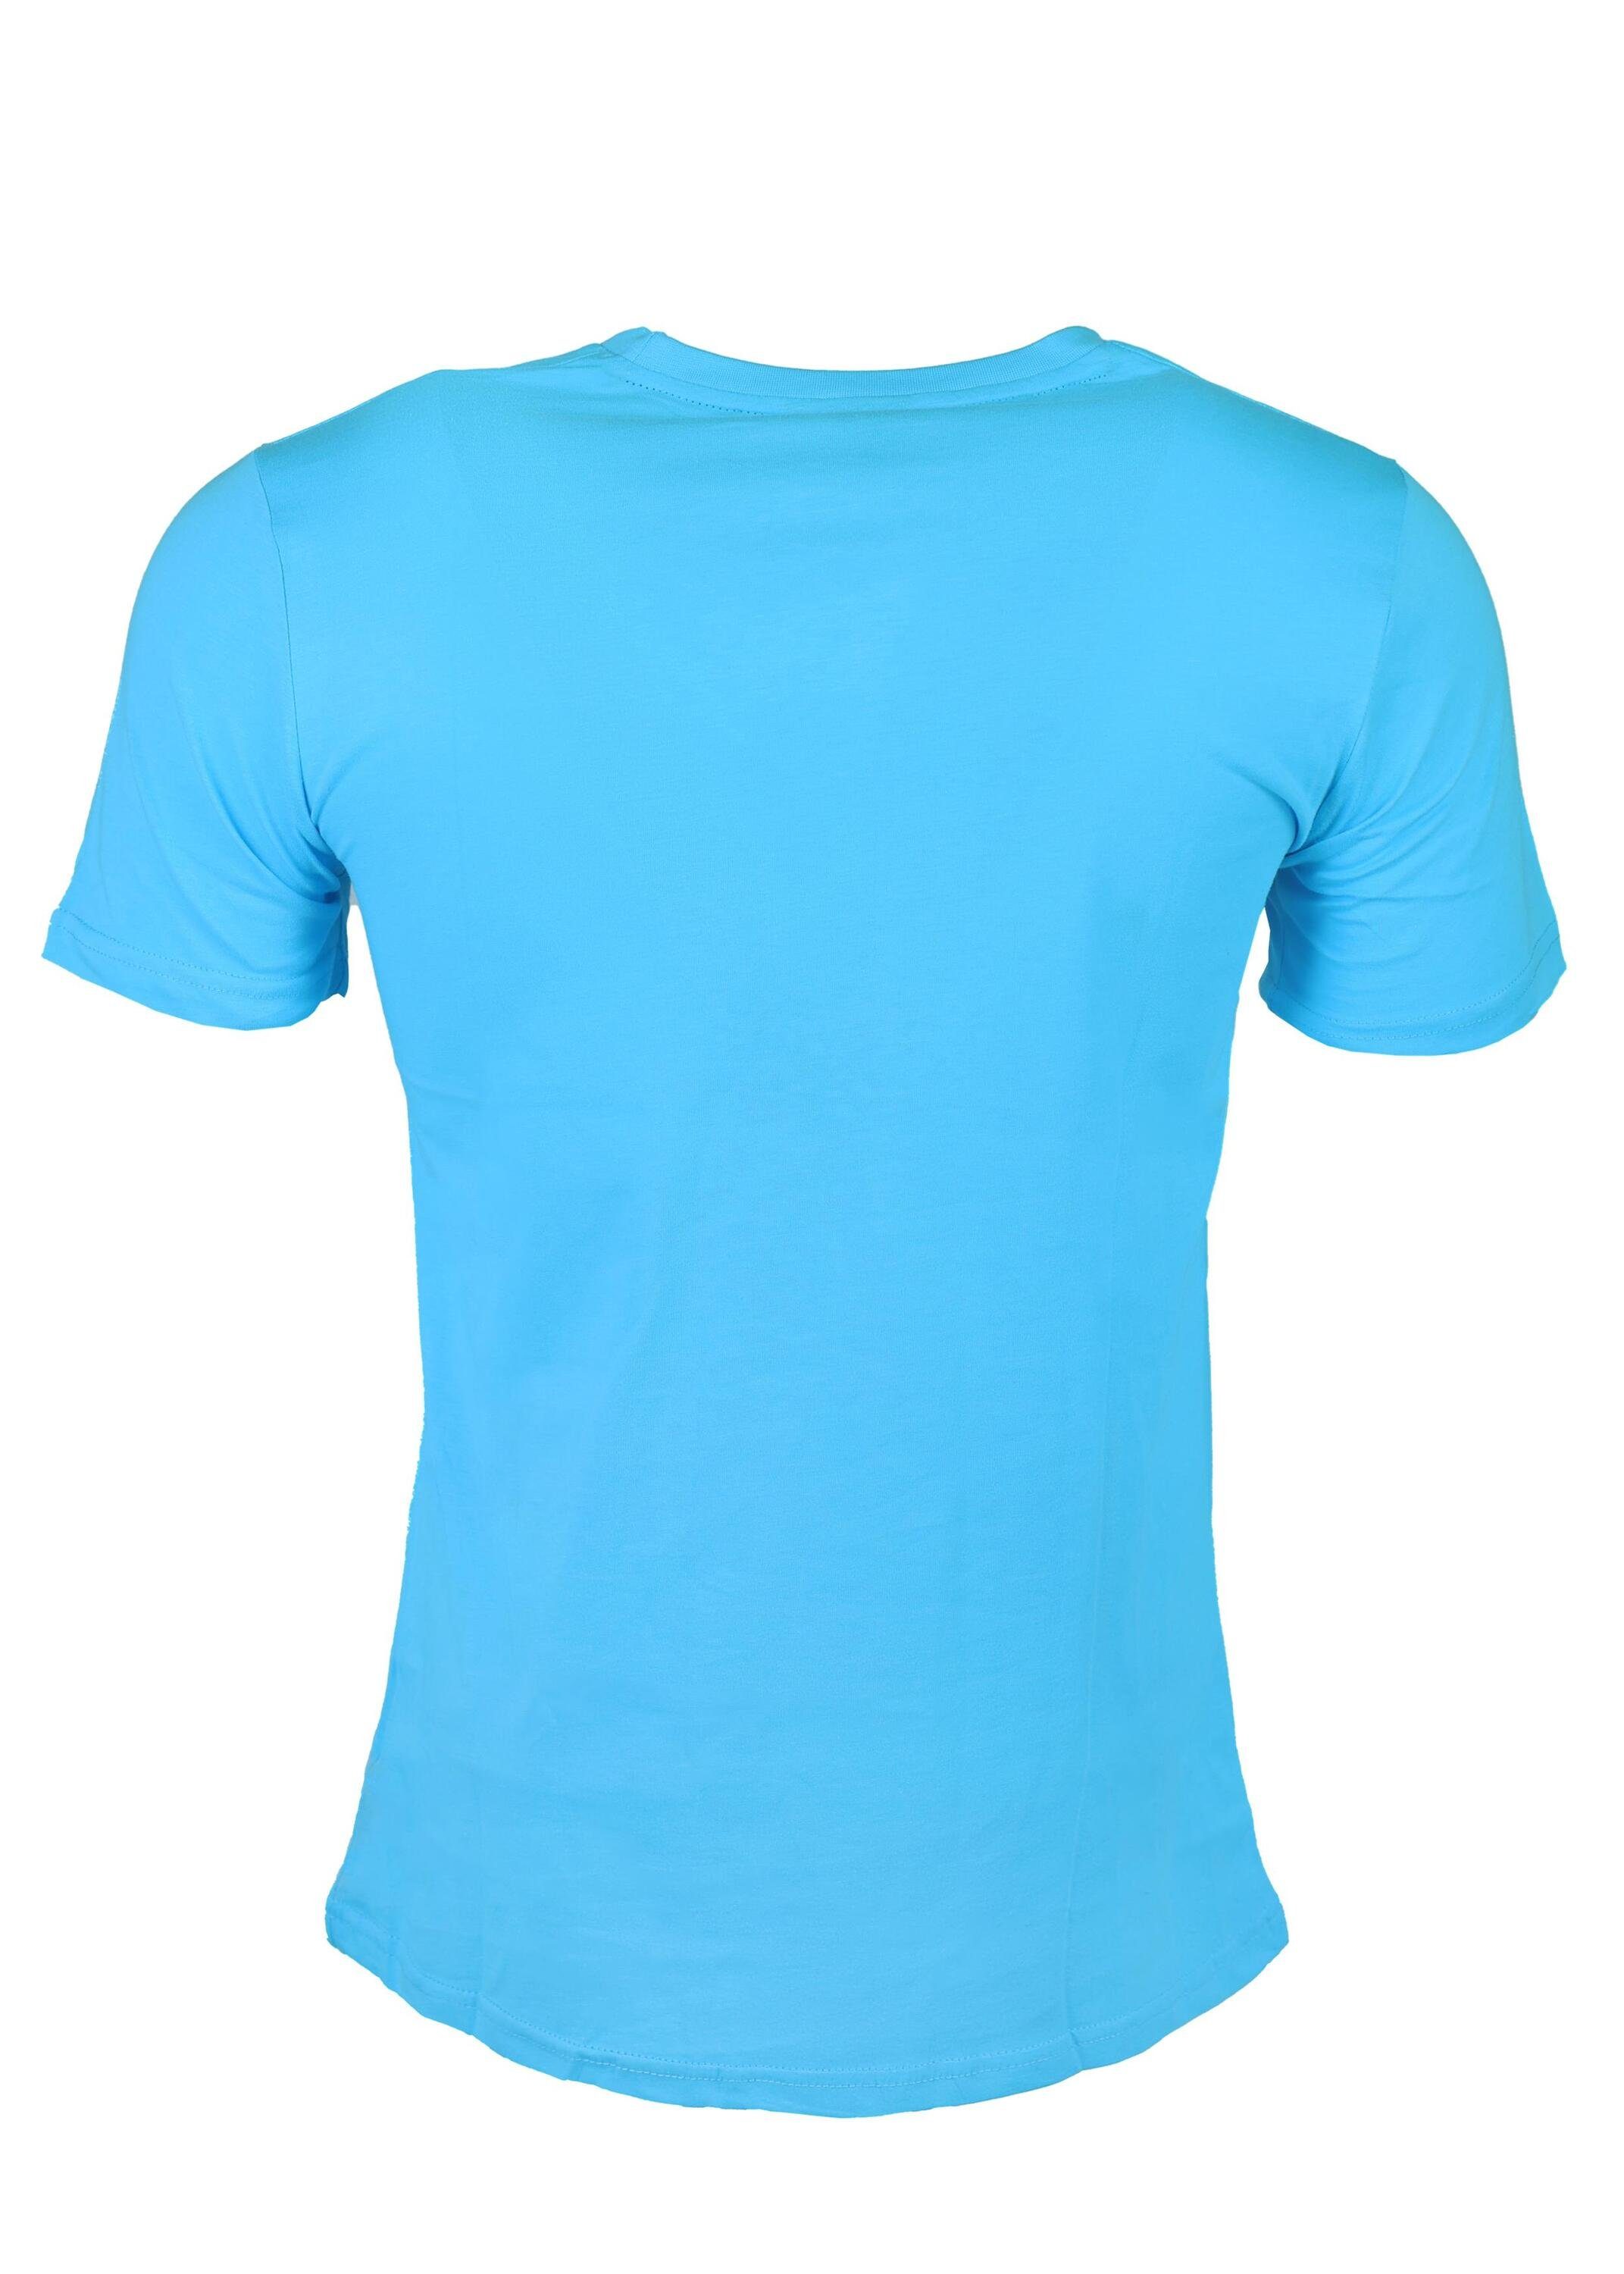 FuPer T-Shirt Juri für Kinder, Jugend aus Fußball, Baumwolle, Blue